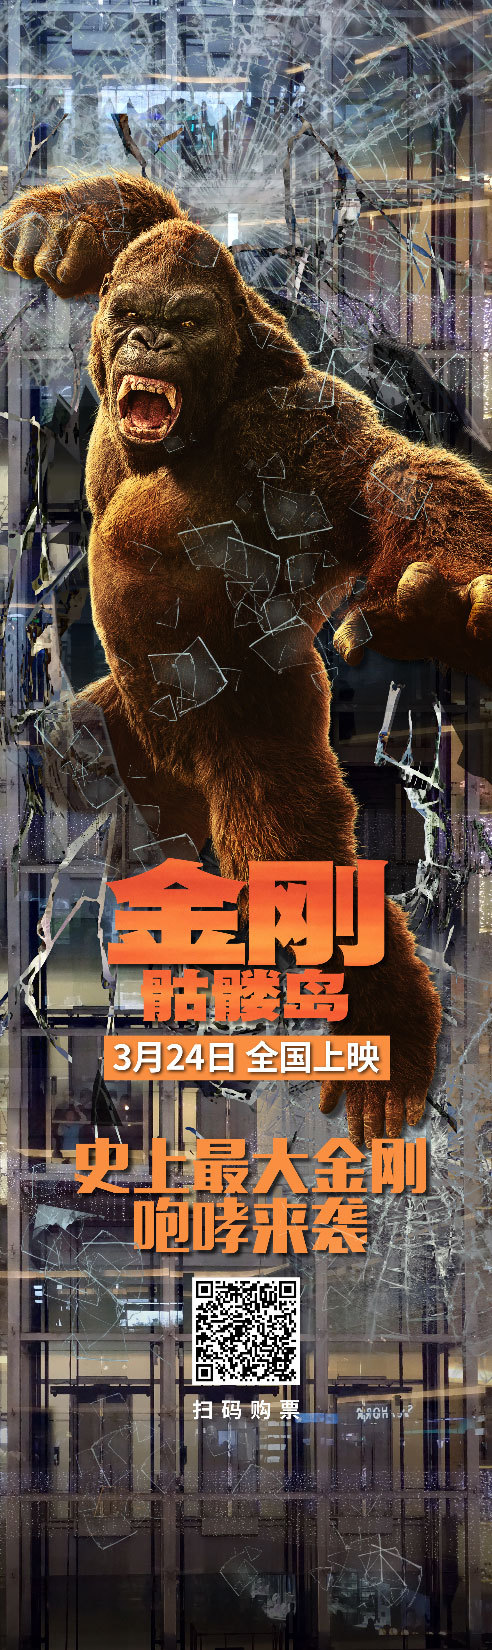 万达天津巨型电影海报设计图0